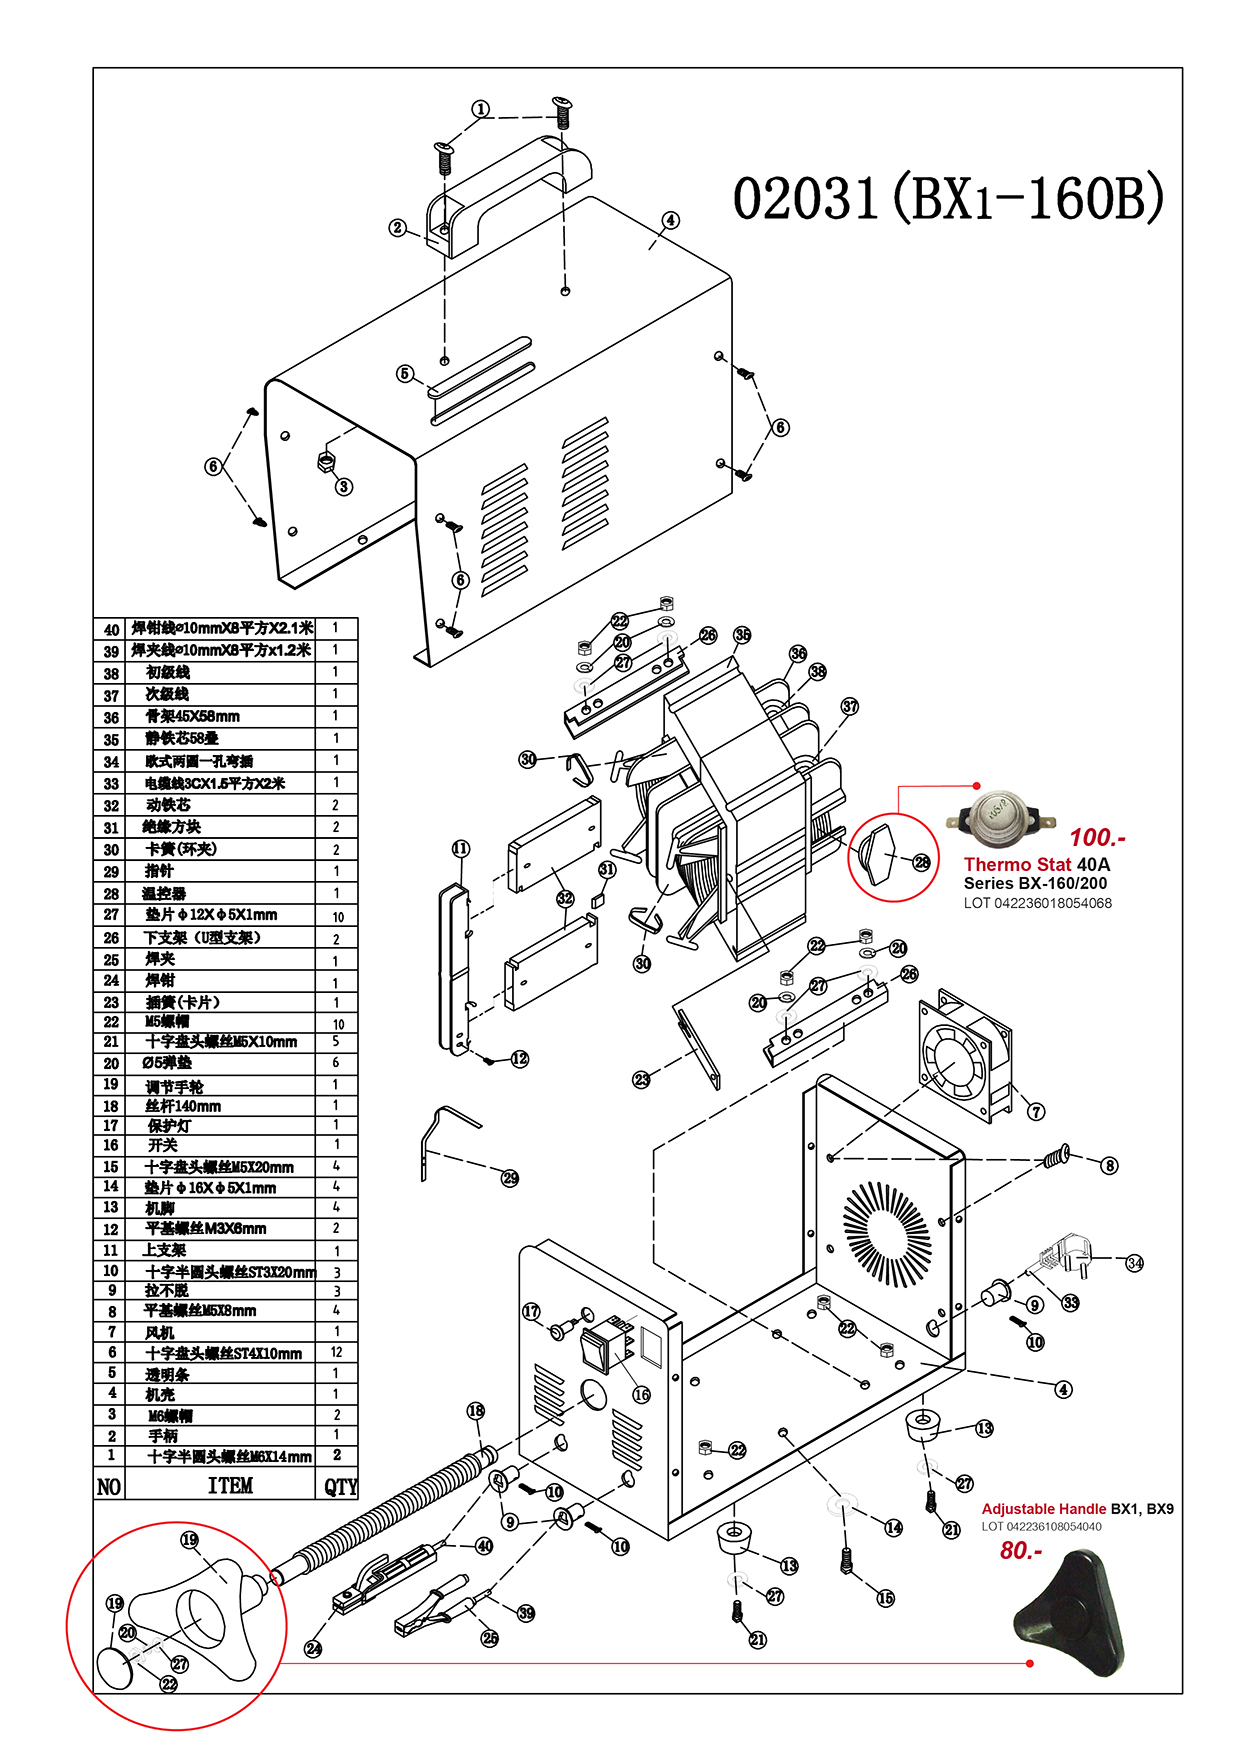 (7/17) เครื่องเชื่อมไฟฟ้า - Welding Machine BX6 Series